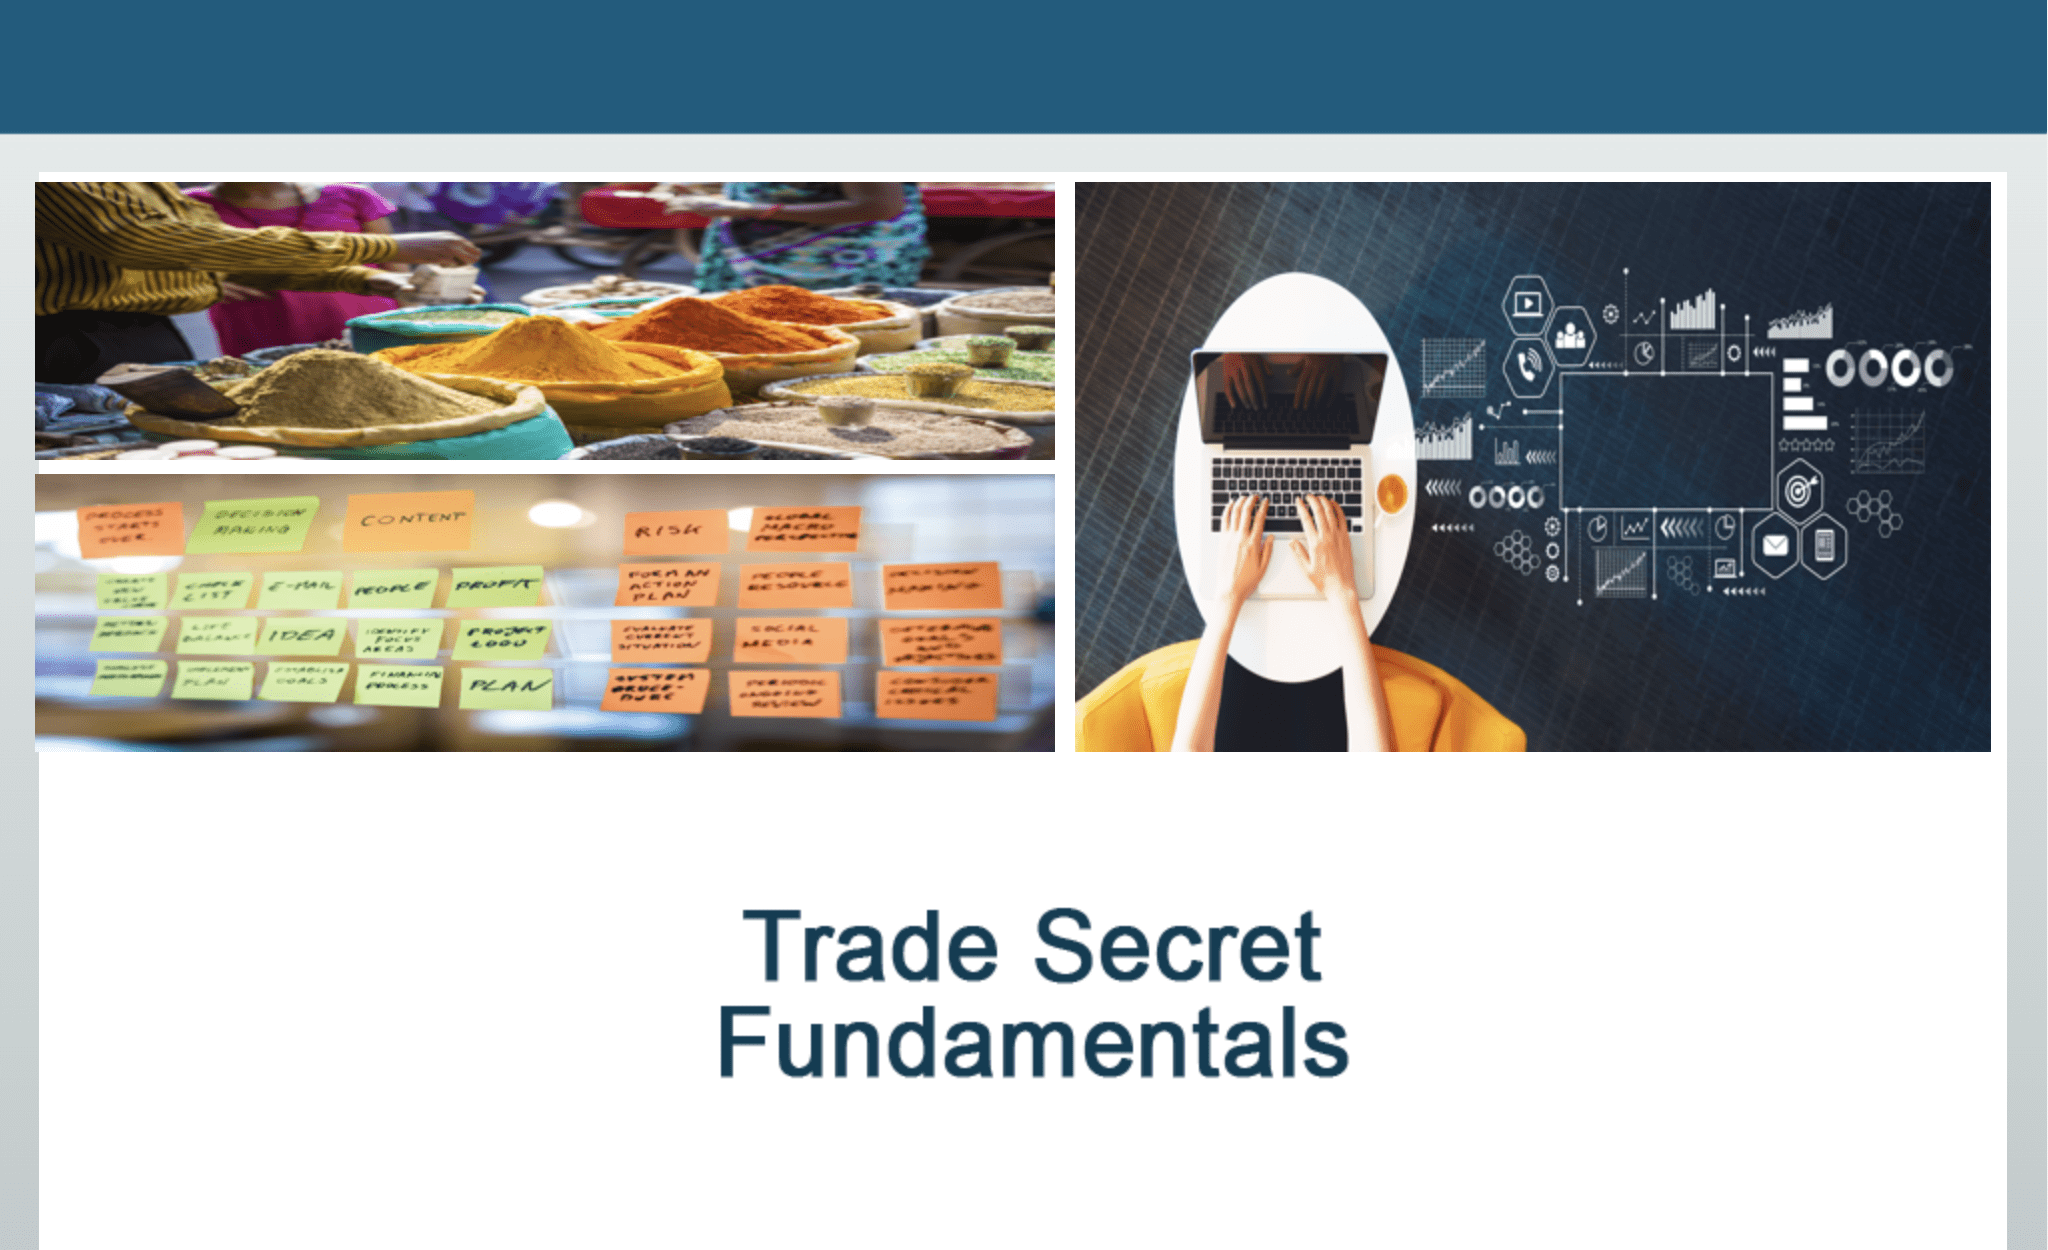 Trade Secret Fundamentals